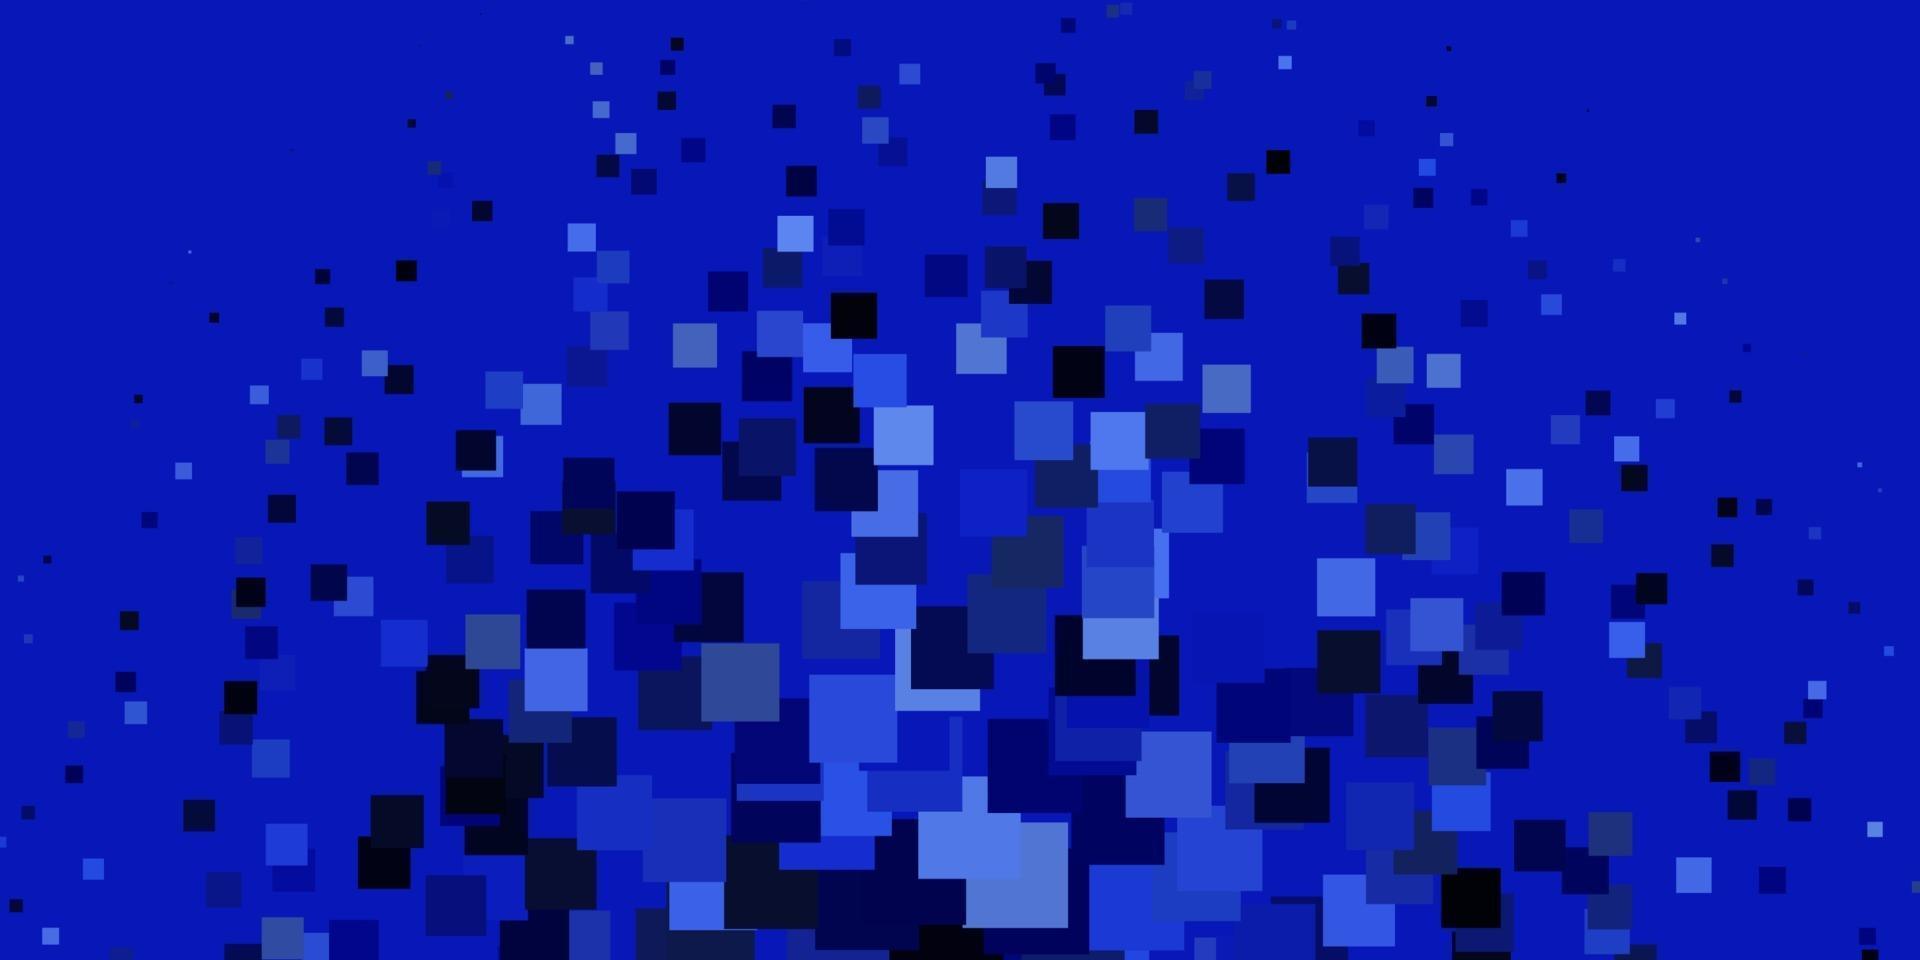 plantilla de vector azul claro en rectángulos.